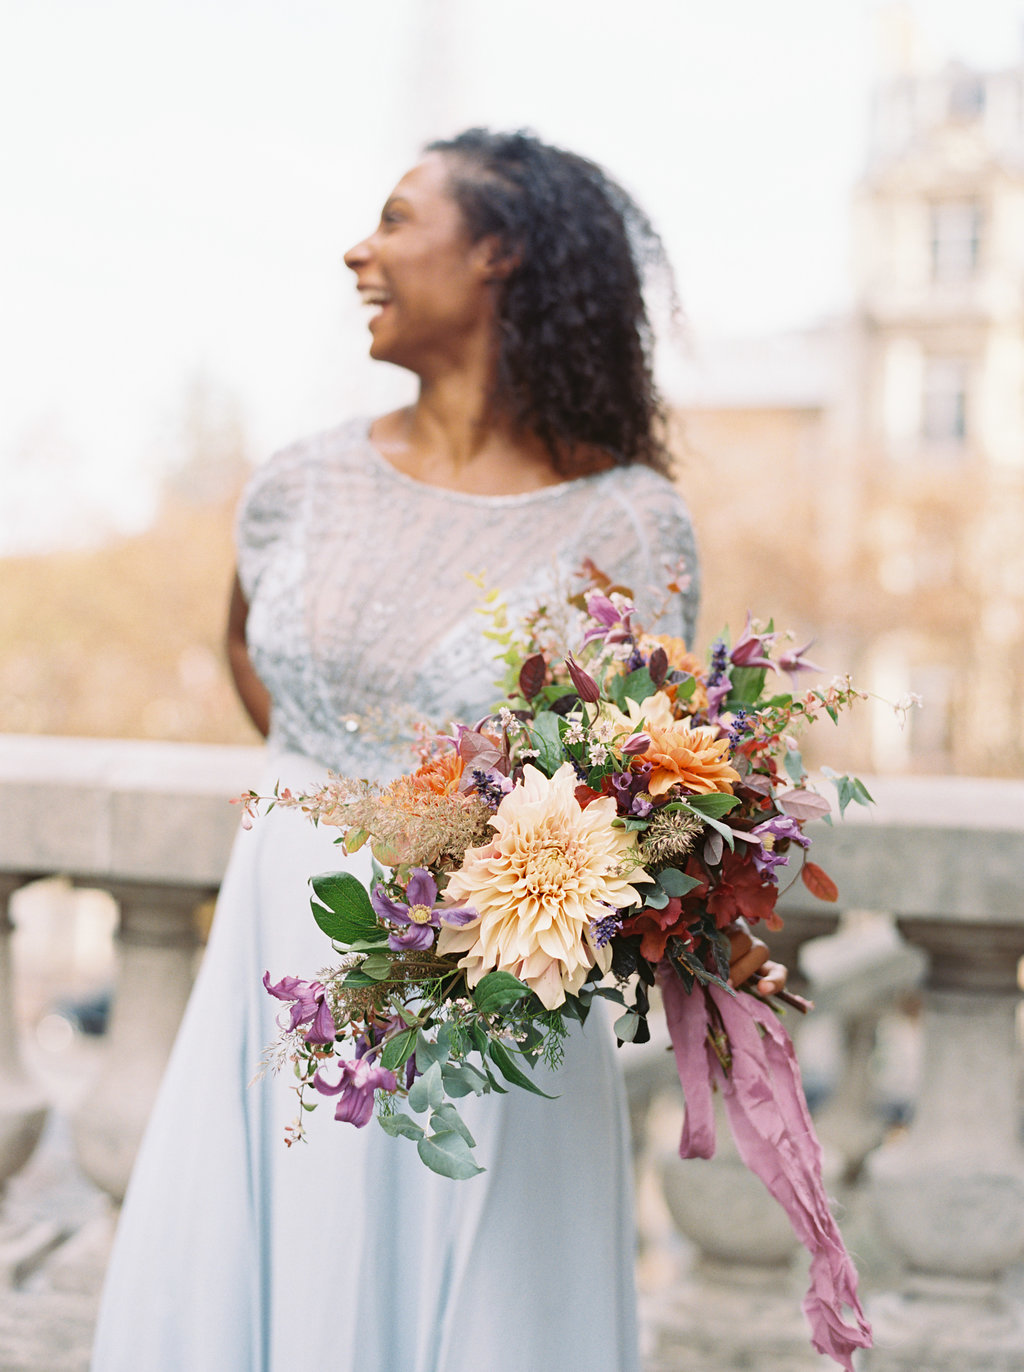 Paris Elopement Floral Design // Lush, untamed wedding flowers